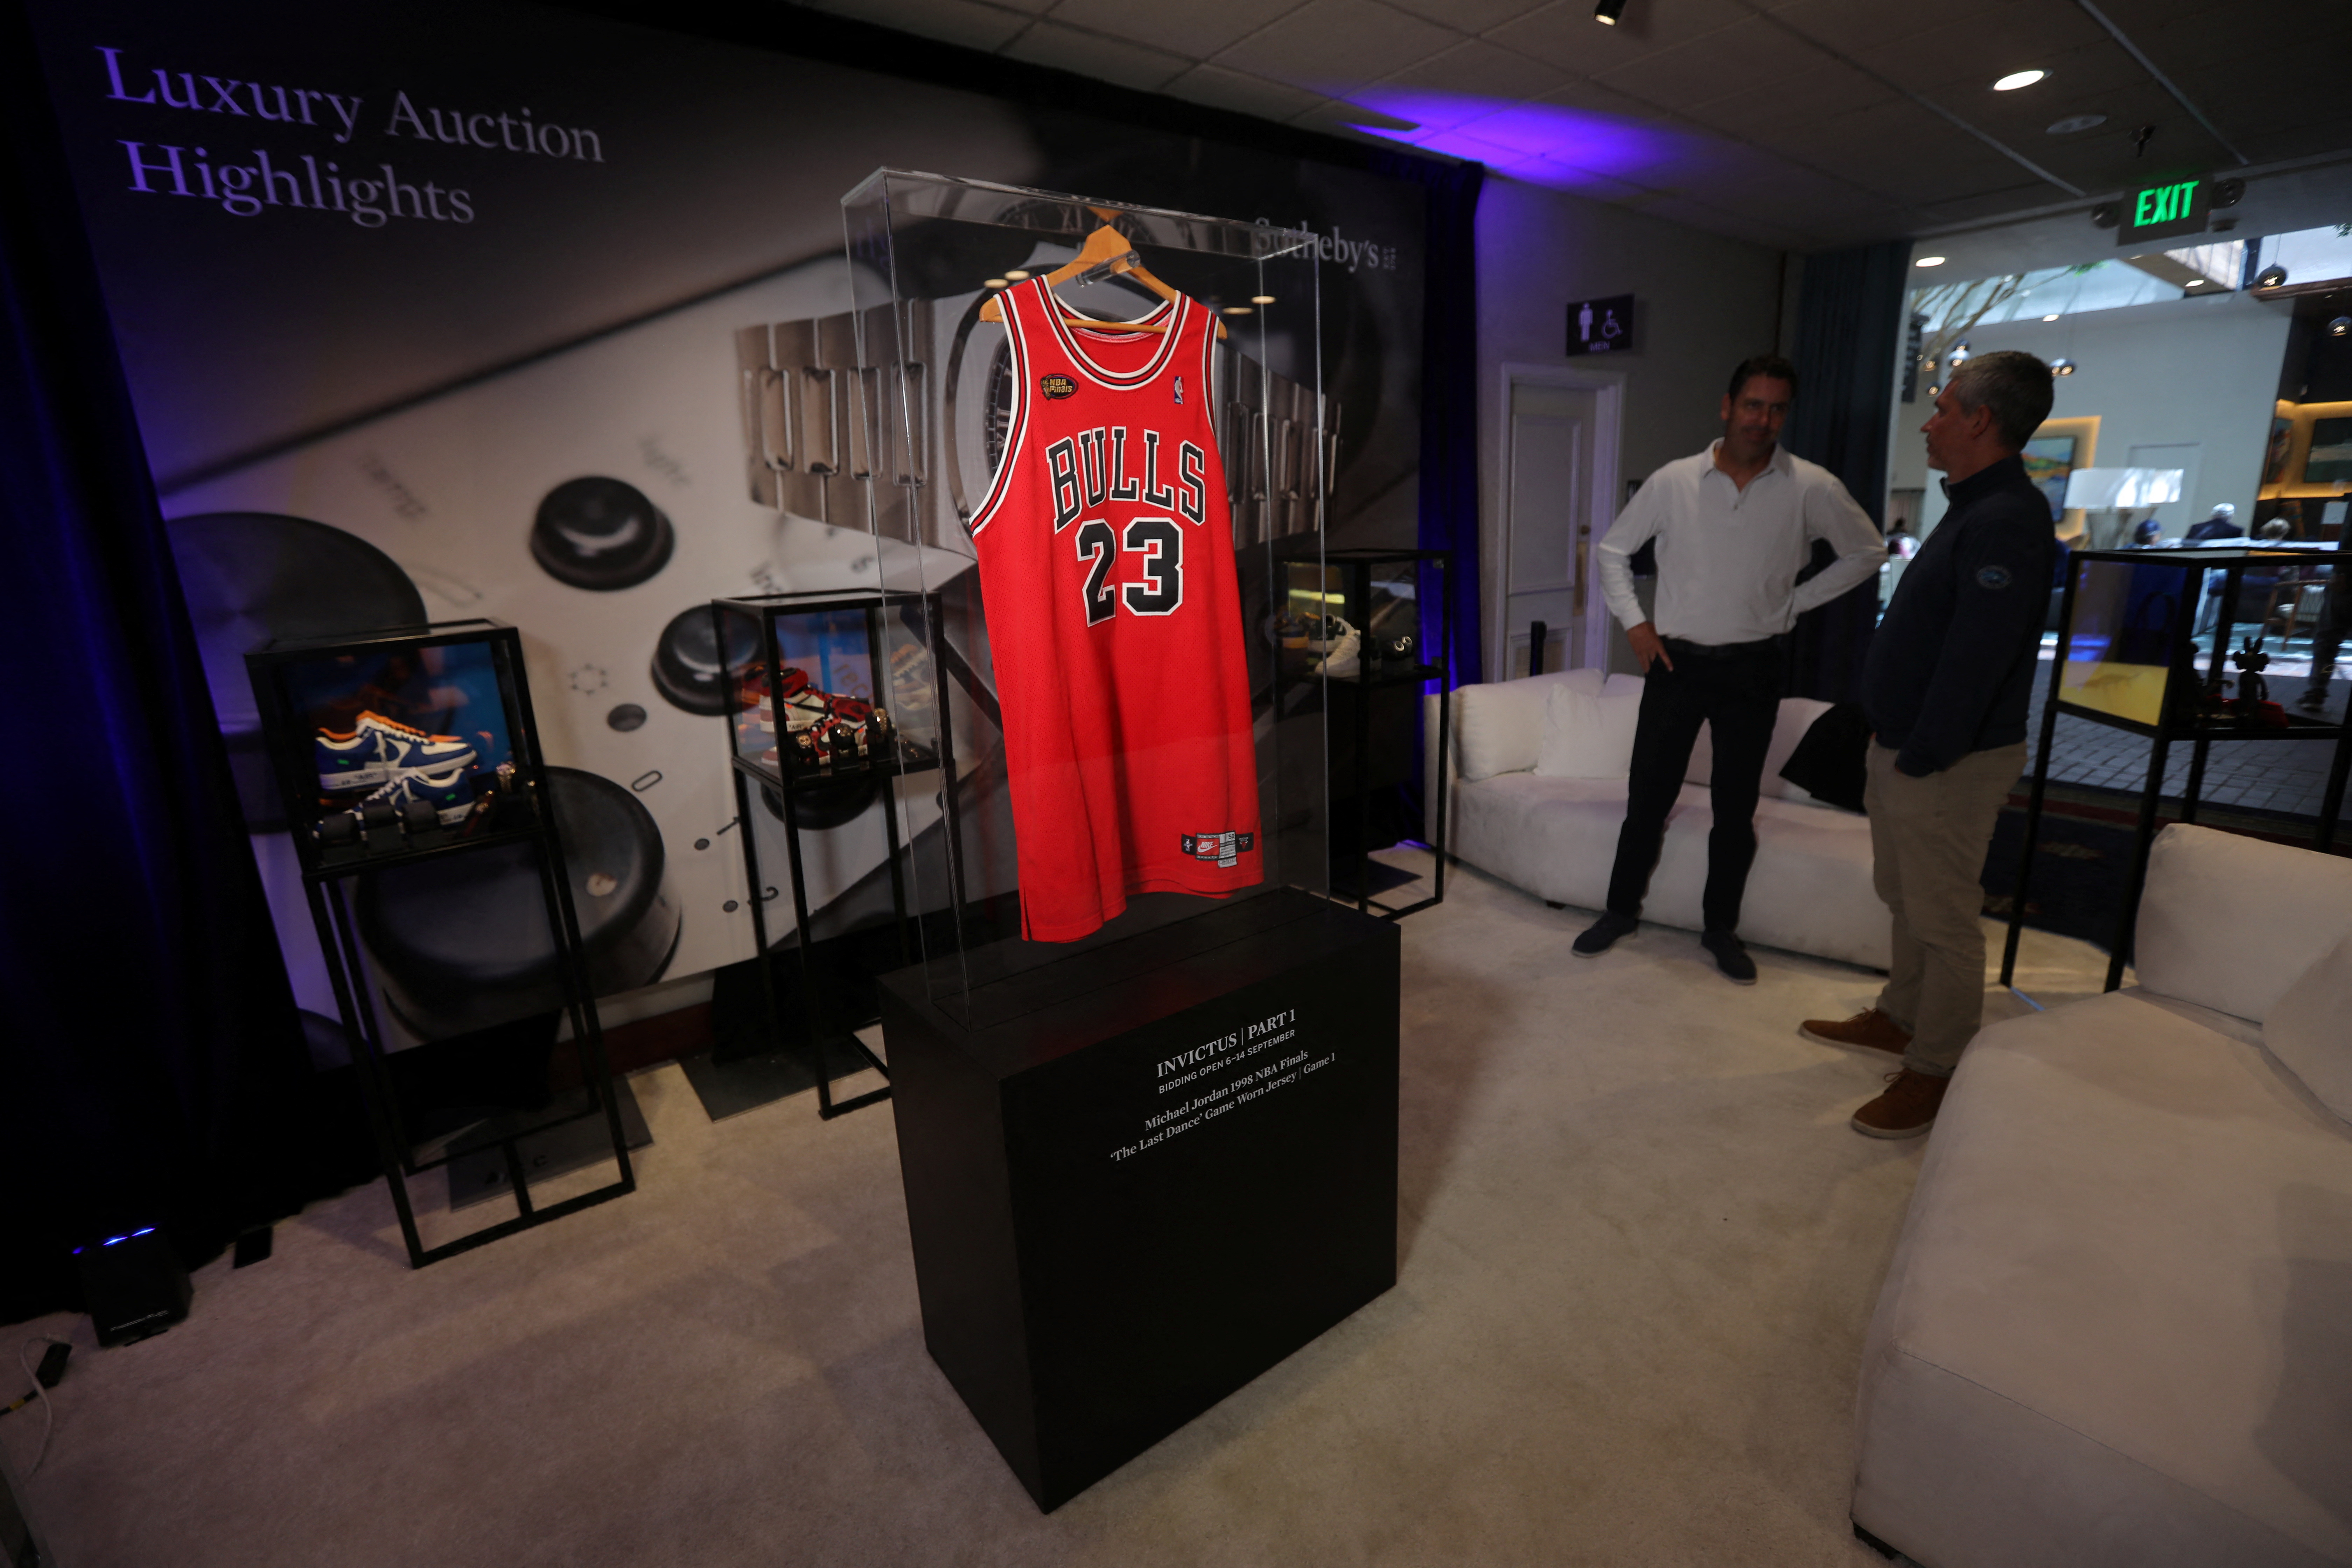 Michael Jordan's 'Last dance' NBA Finals shoes set record at auction